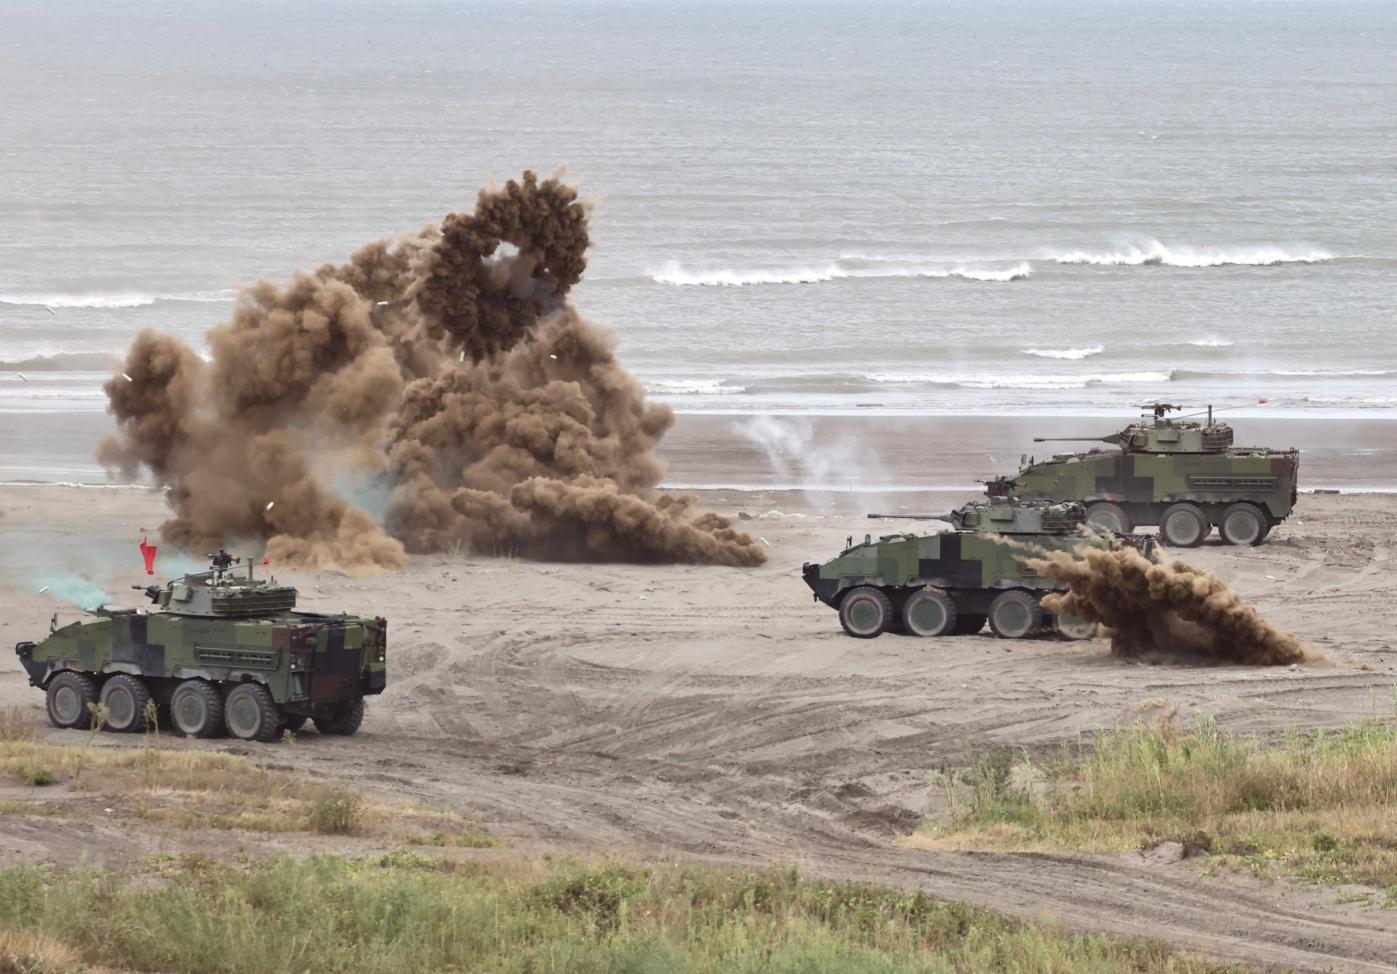  漢光39演習今年7月在新北市八里海灘驗證國軍聯合反登陸作戰。資料照片